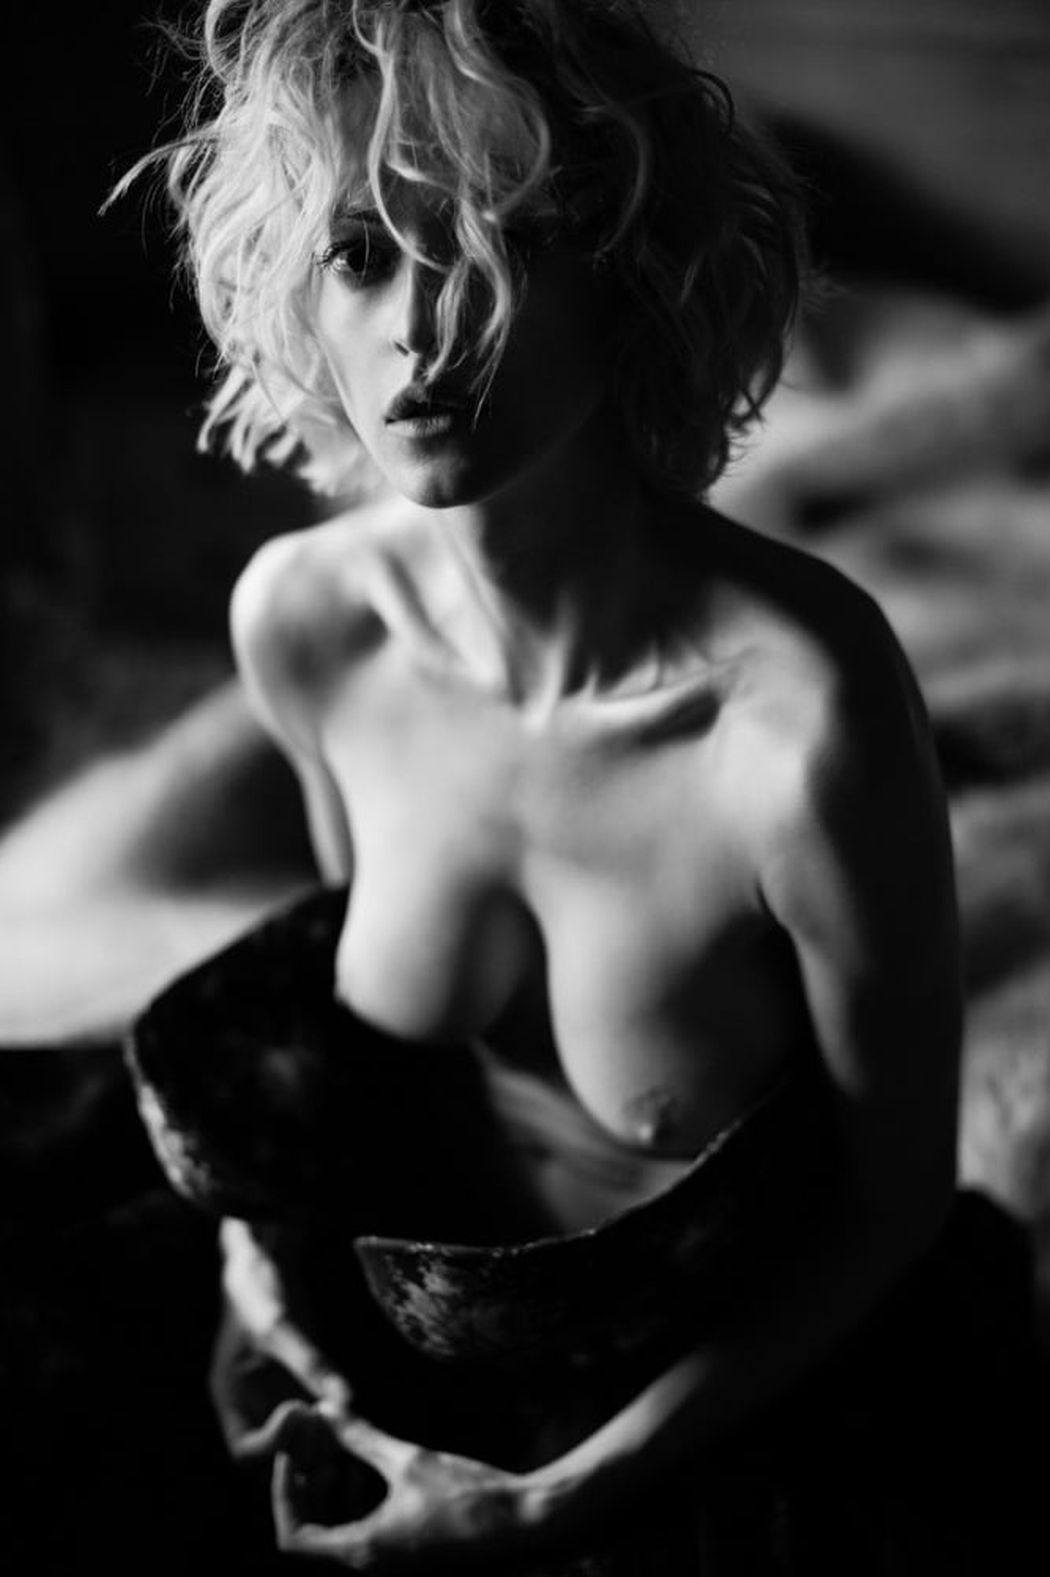 Mooie sensuele vrouwen op erotische zwart wit fotos